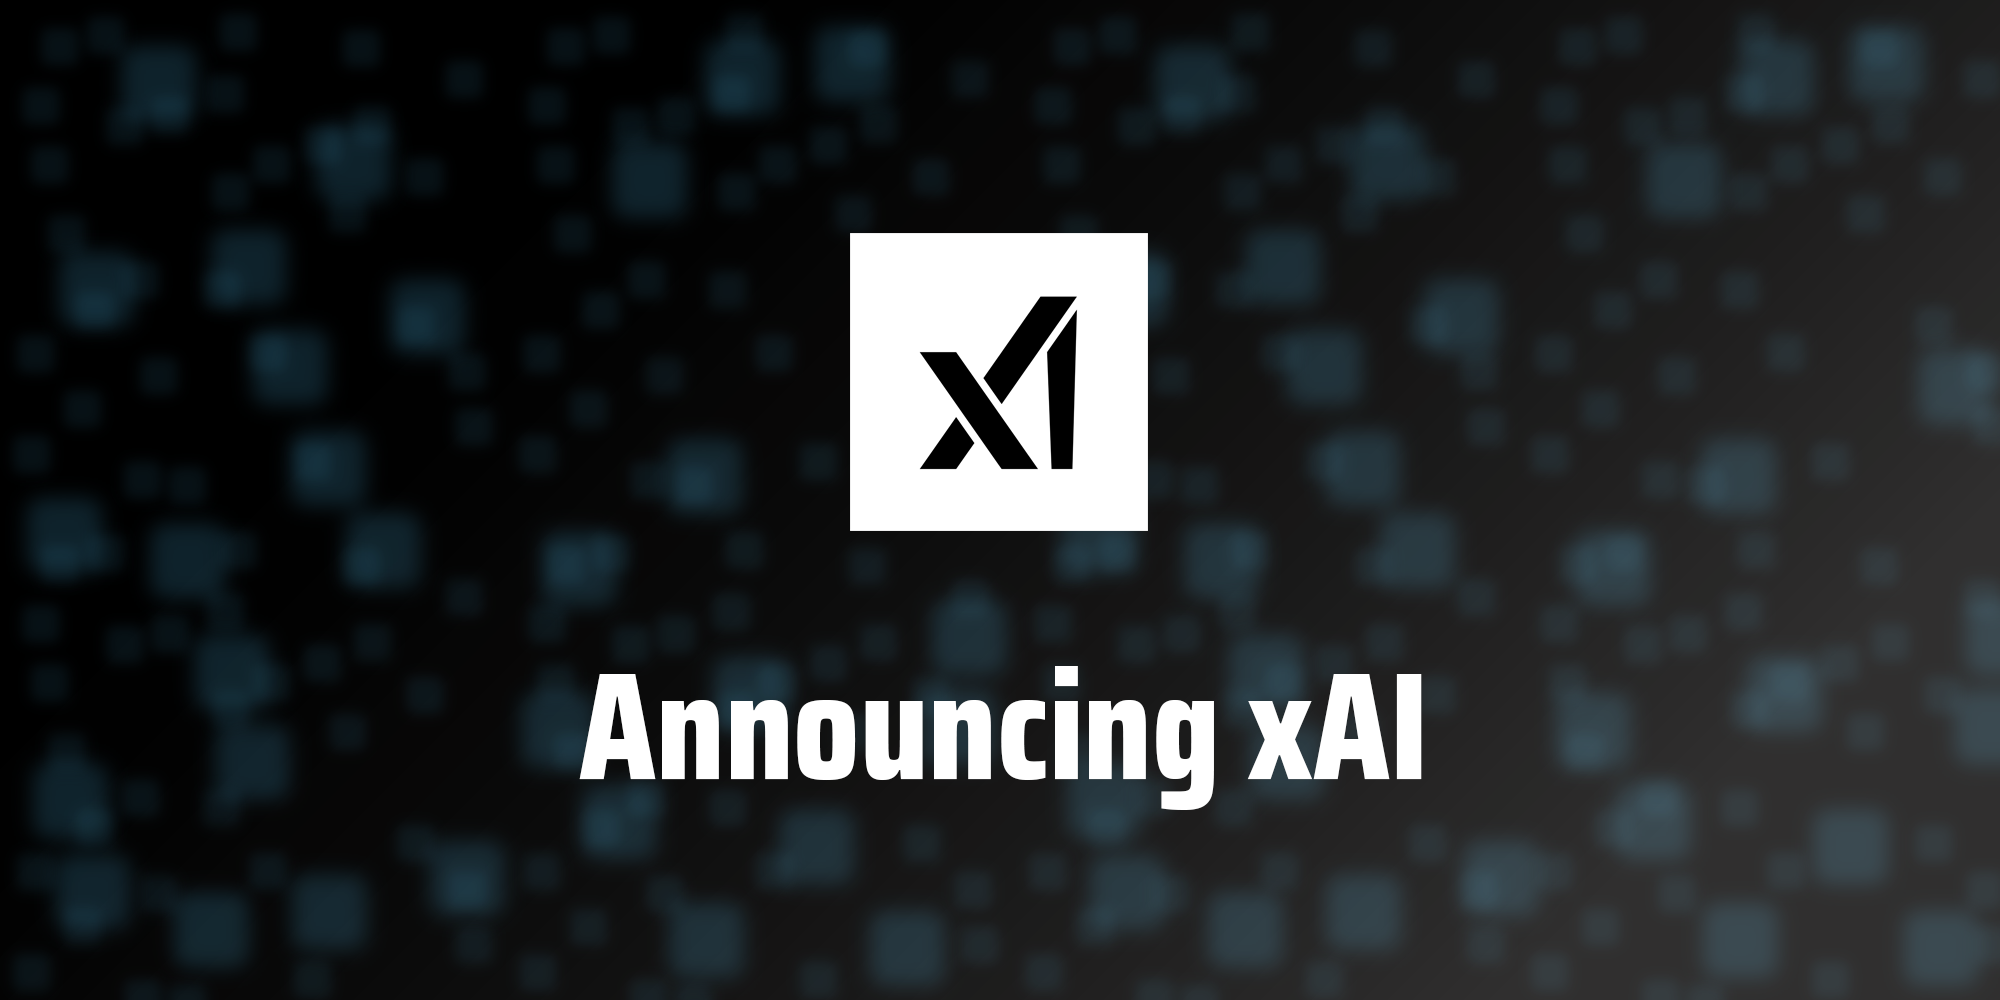 xAI lance son premier modèle d'intelligence artificielle pour un "groupe d'utilisateurs sélectionnés".